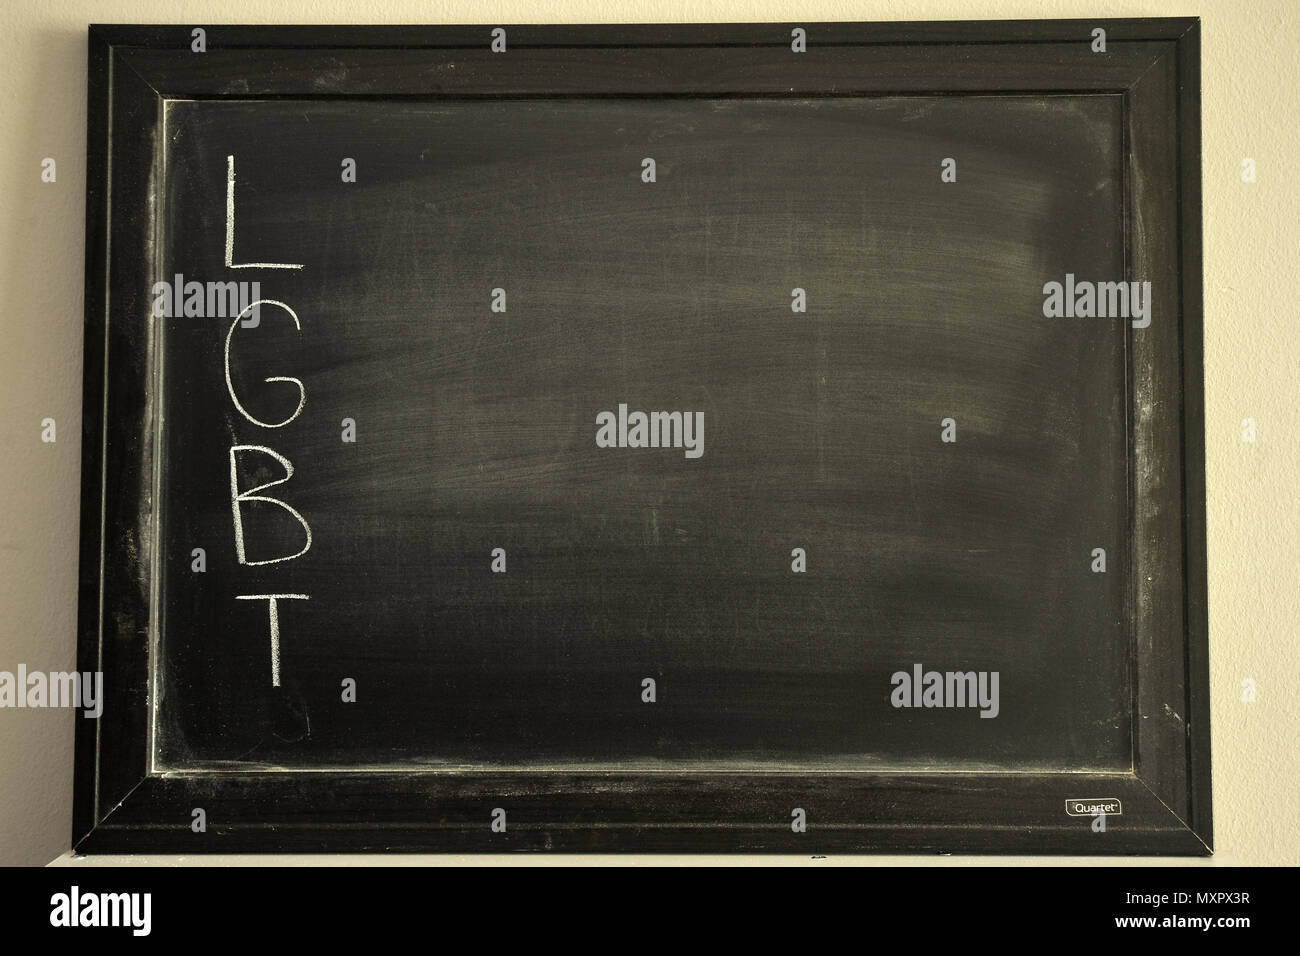 LGBT written in white chalk on a blackboard Stock Photo